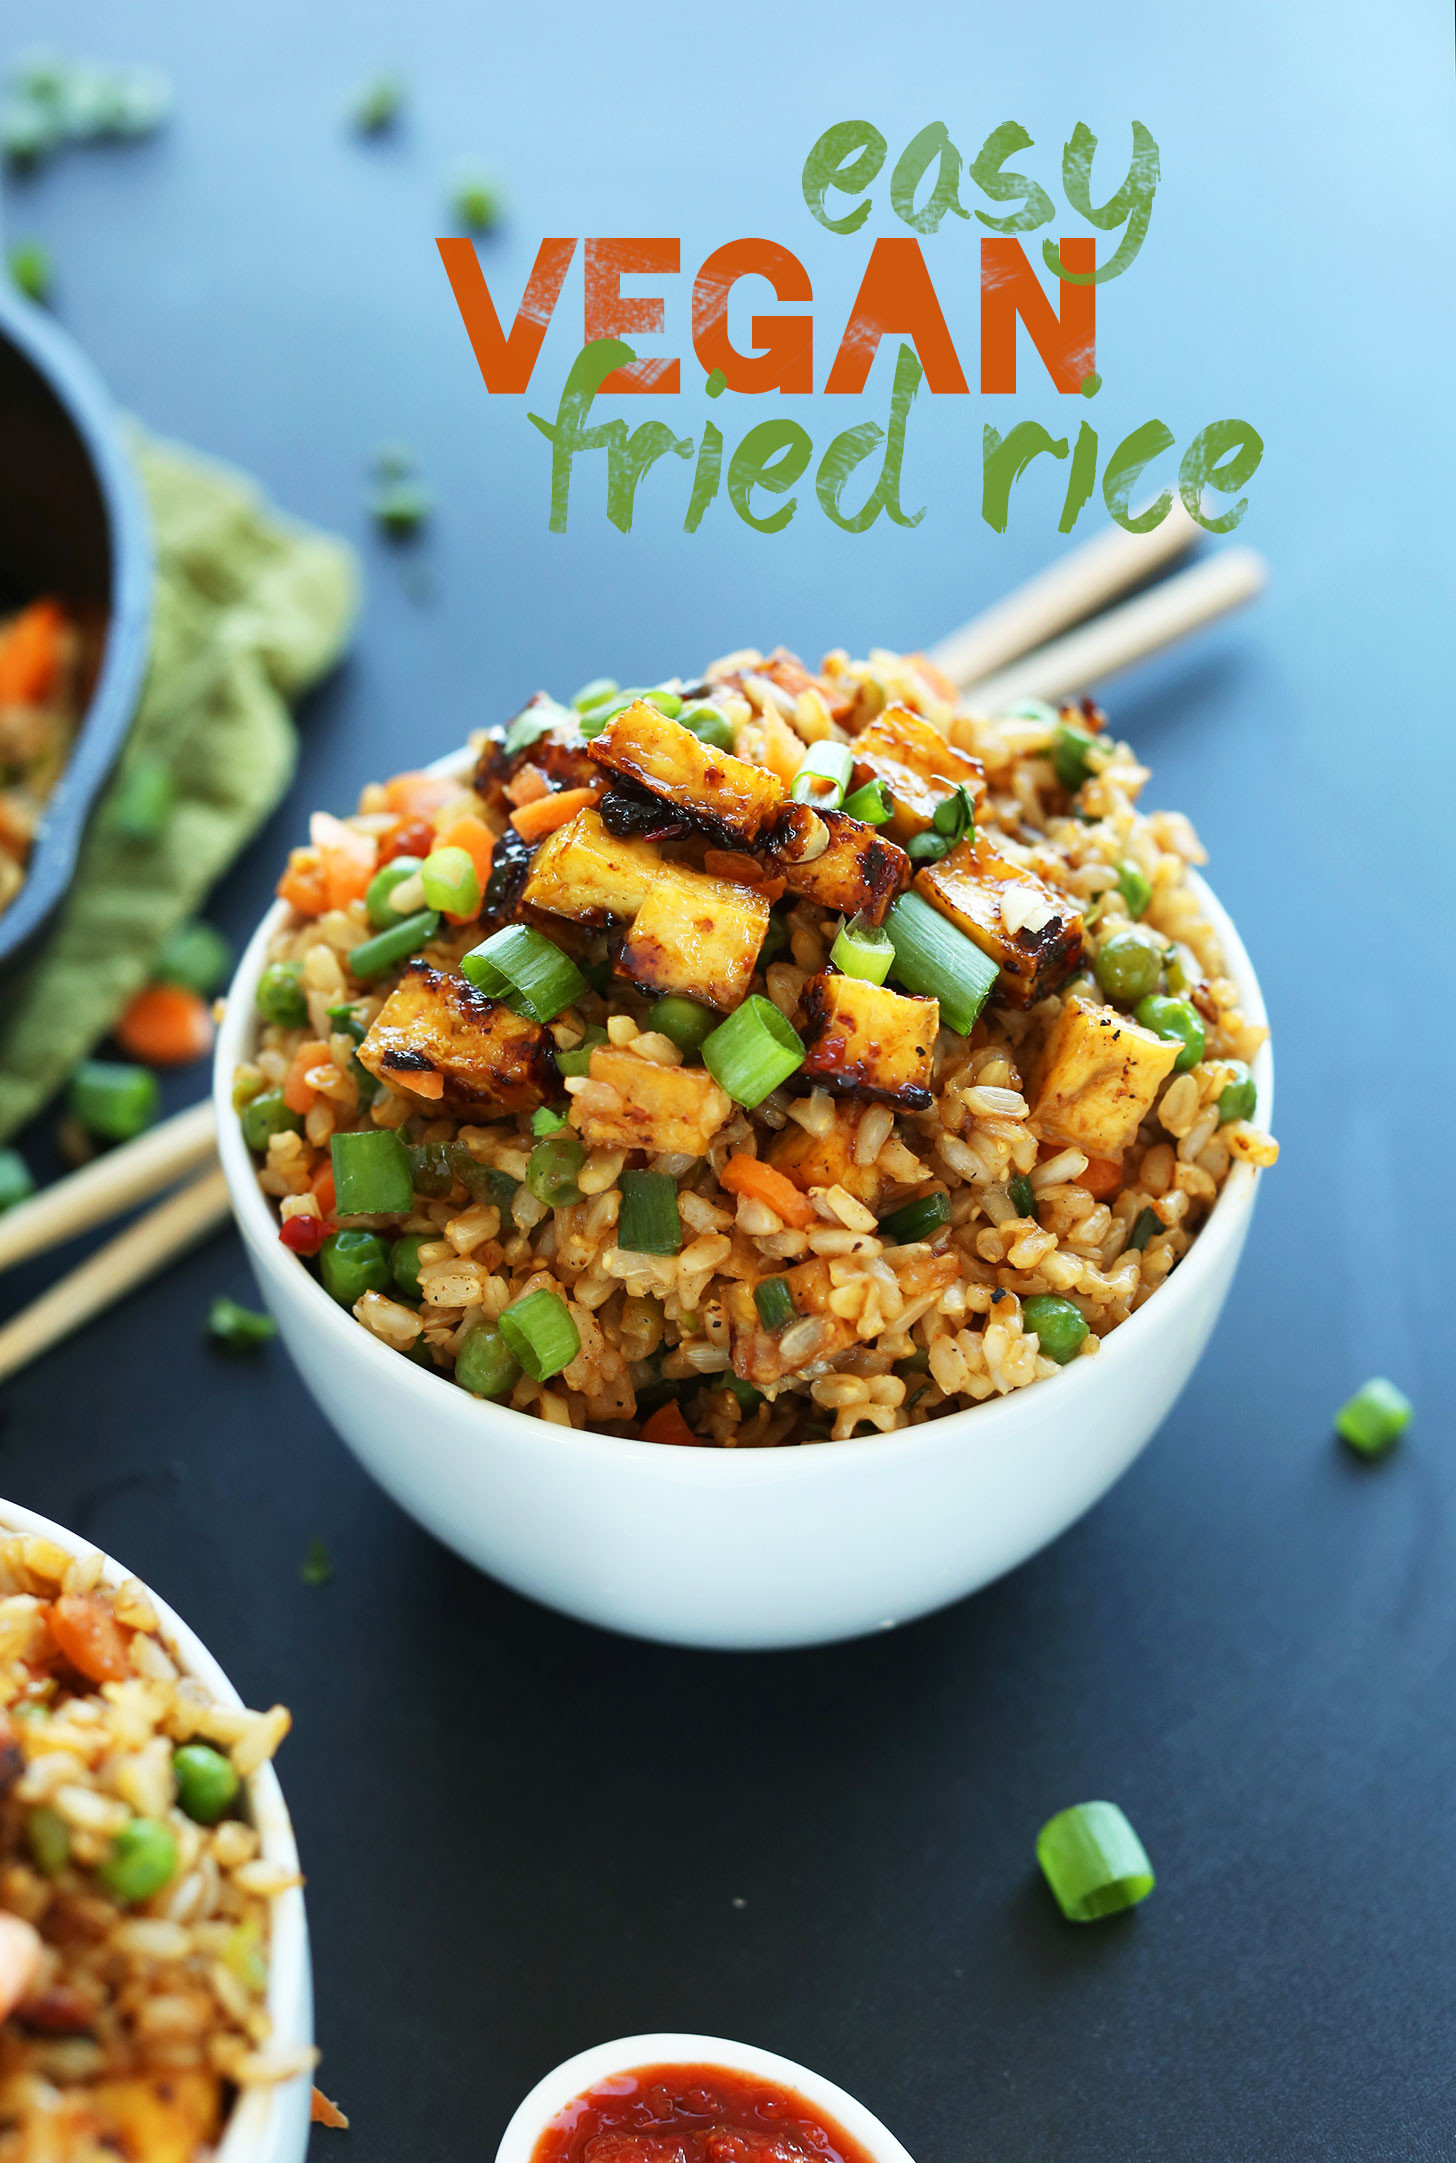 Easy Vegan Recipes For Dinner
 Vegan Fried Rice